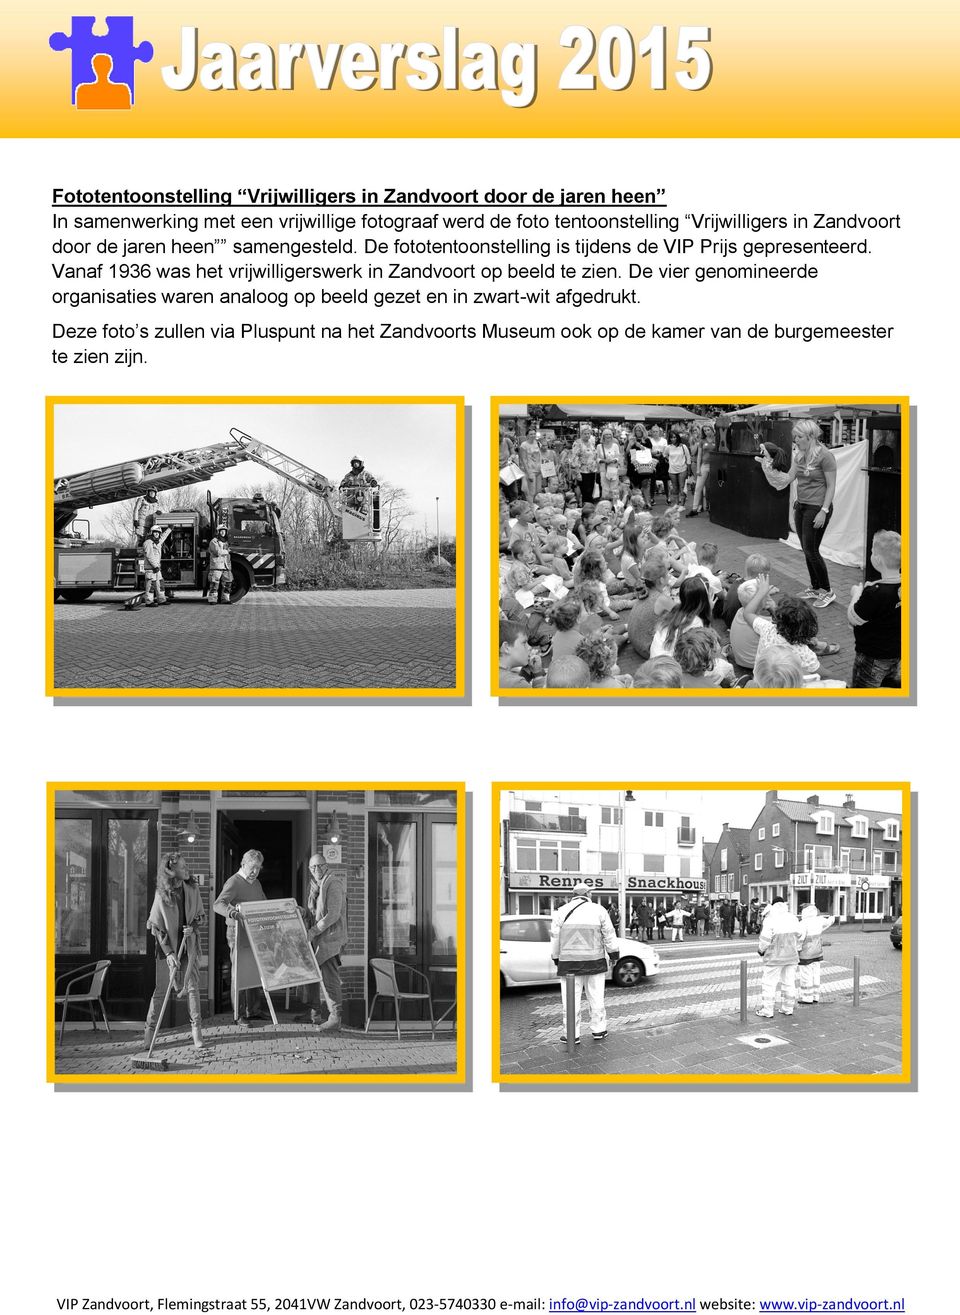 De fototentoonstelling is tijdens de VIP Prijs gepresenteerd. Vanaf 1936 was het vrijwilligerswerk in Zandvoort op beeld te zien.